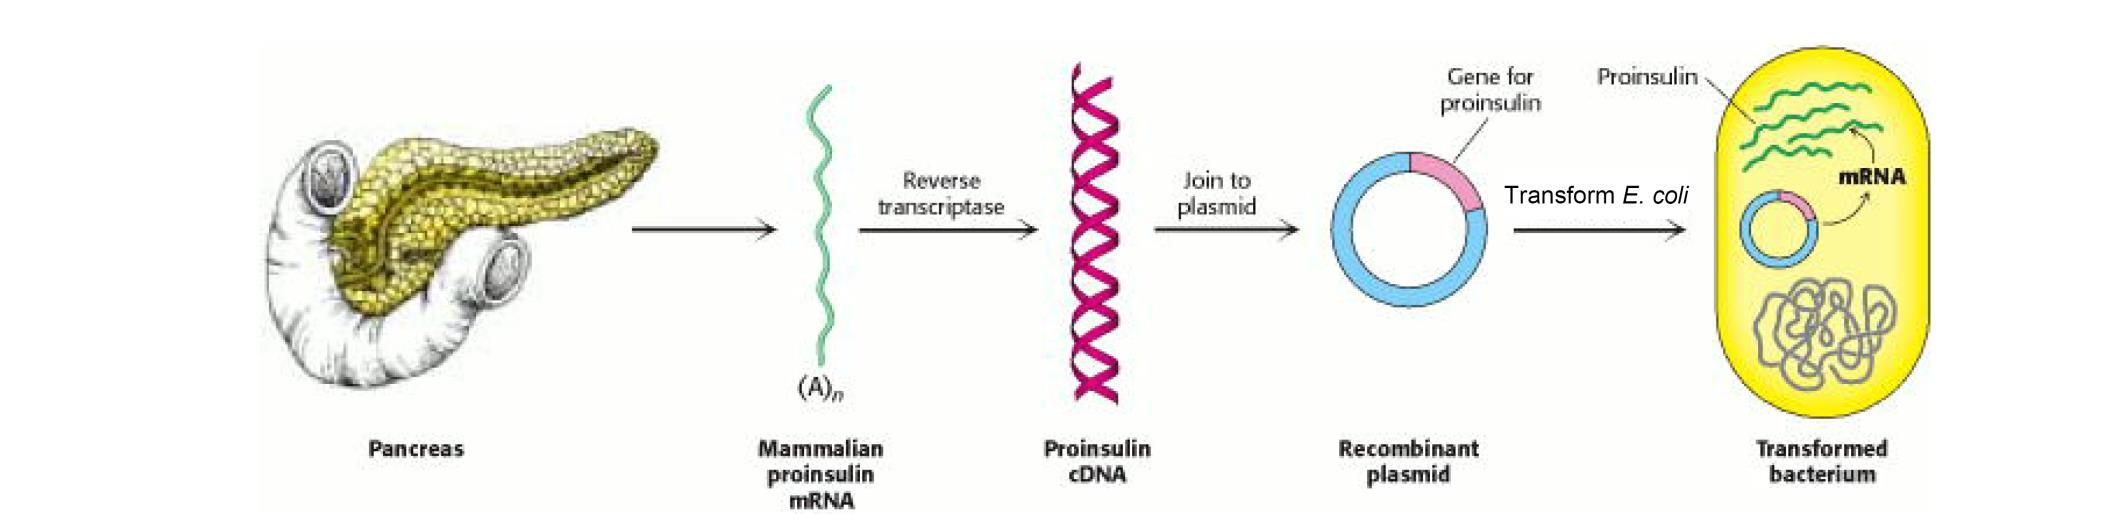 Inzulin előállítása rekombináns proinzulinból Pancreas Proinzulin mrns Proinzulin cdns Rekombináns plazmid Transzformált baktérium Proinzulin